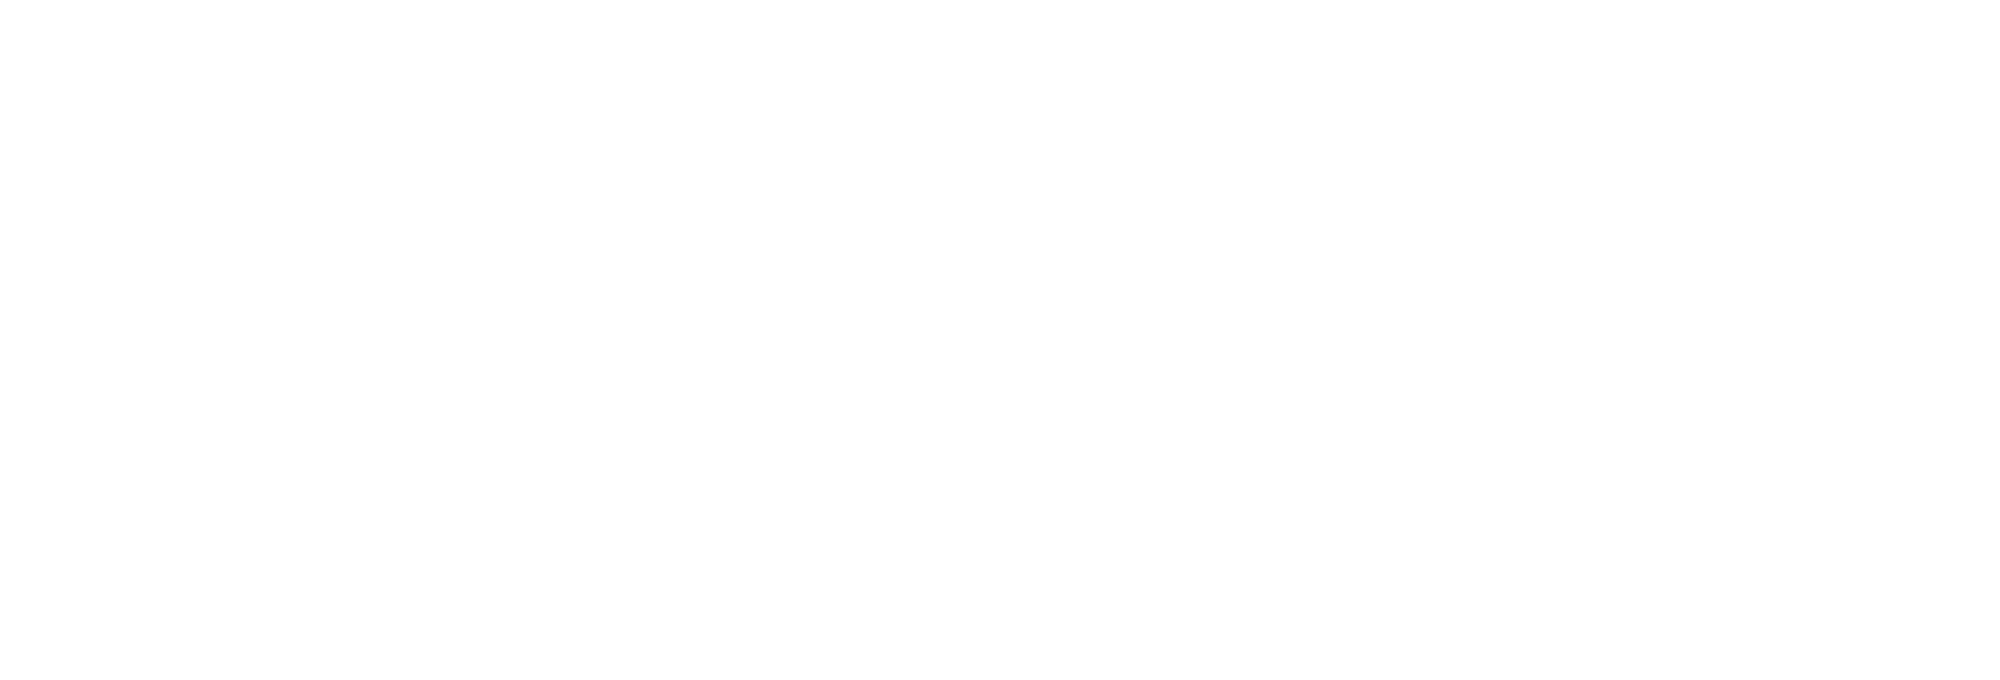 WordPress type logo